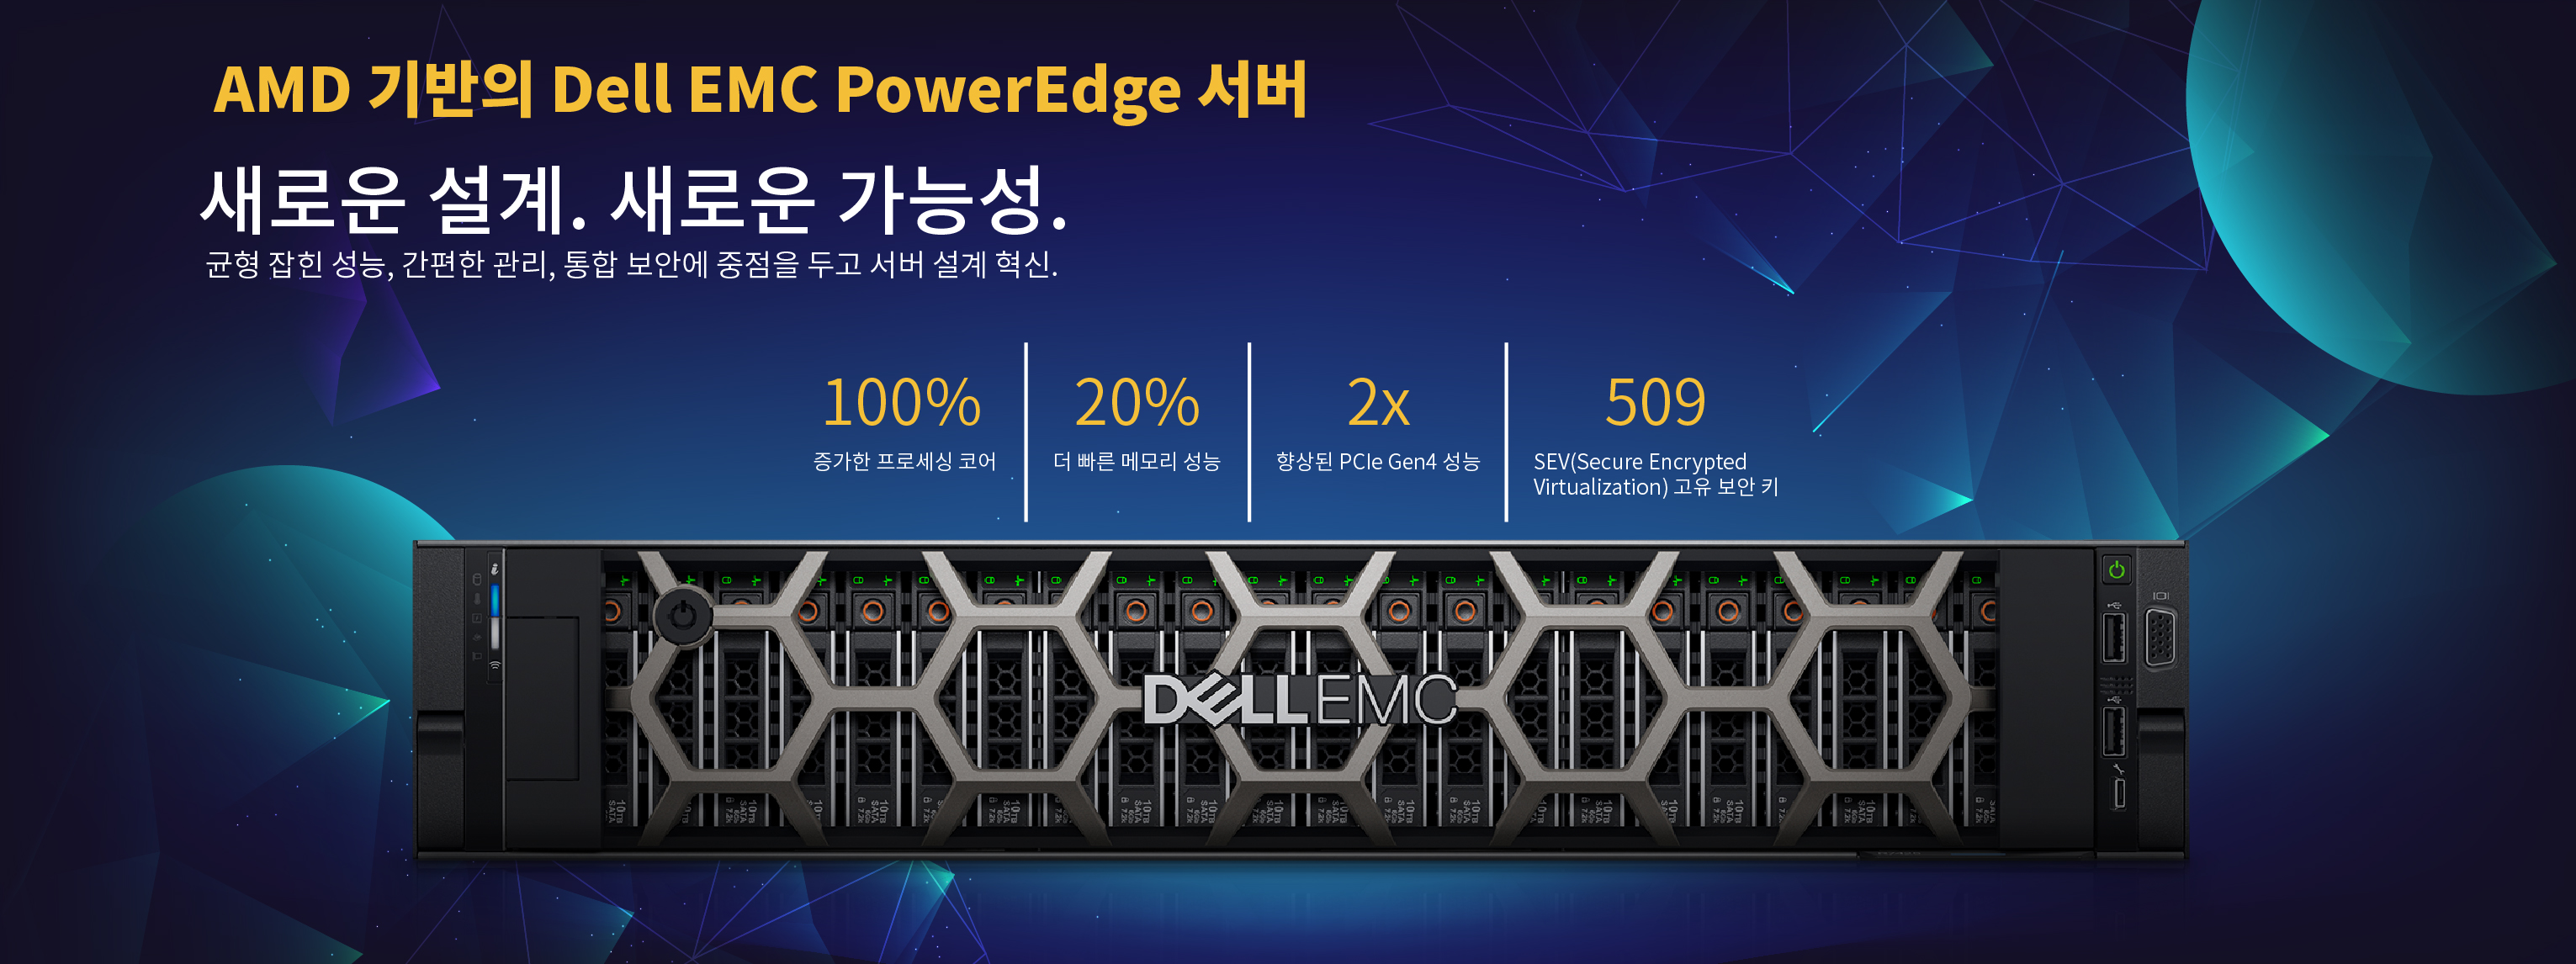 Dell EMC PowerEdge Server